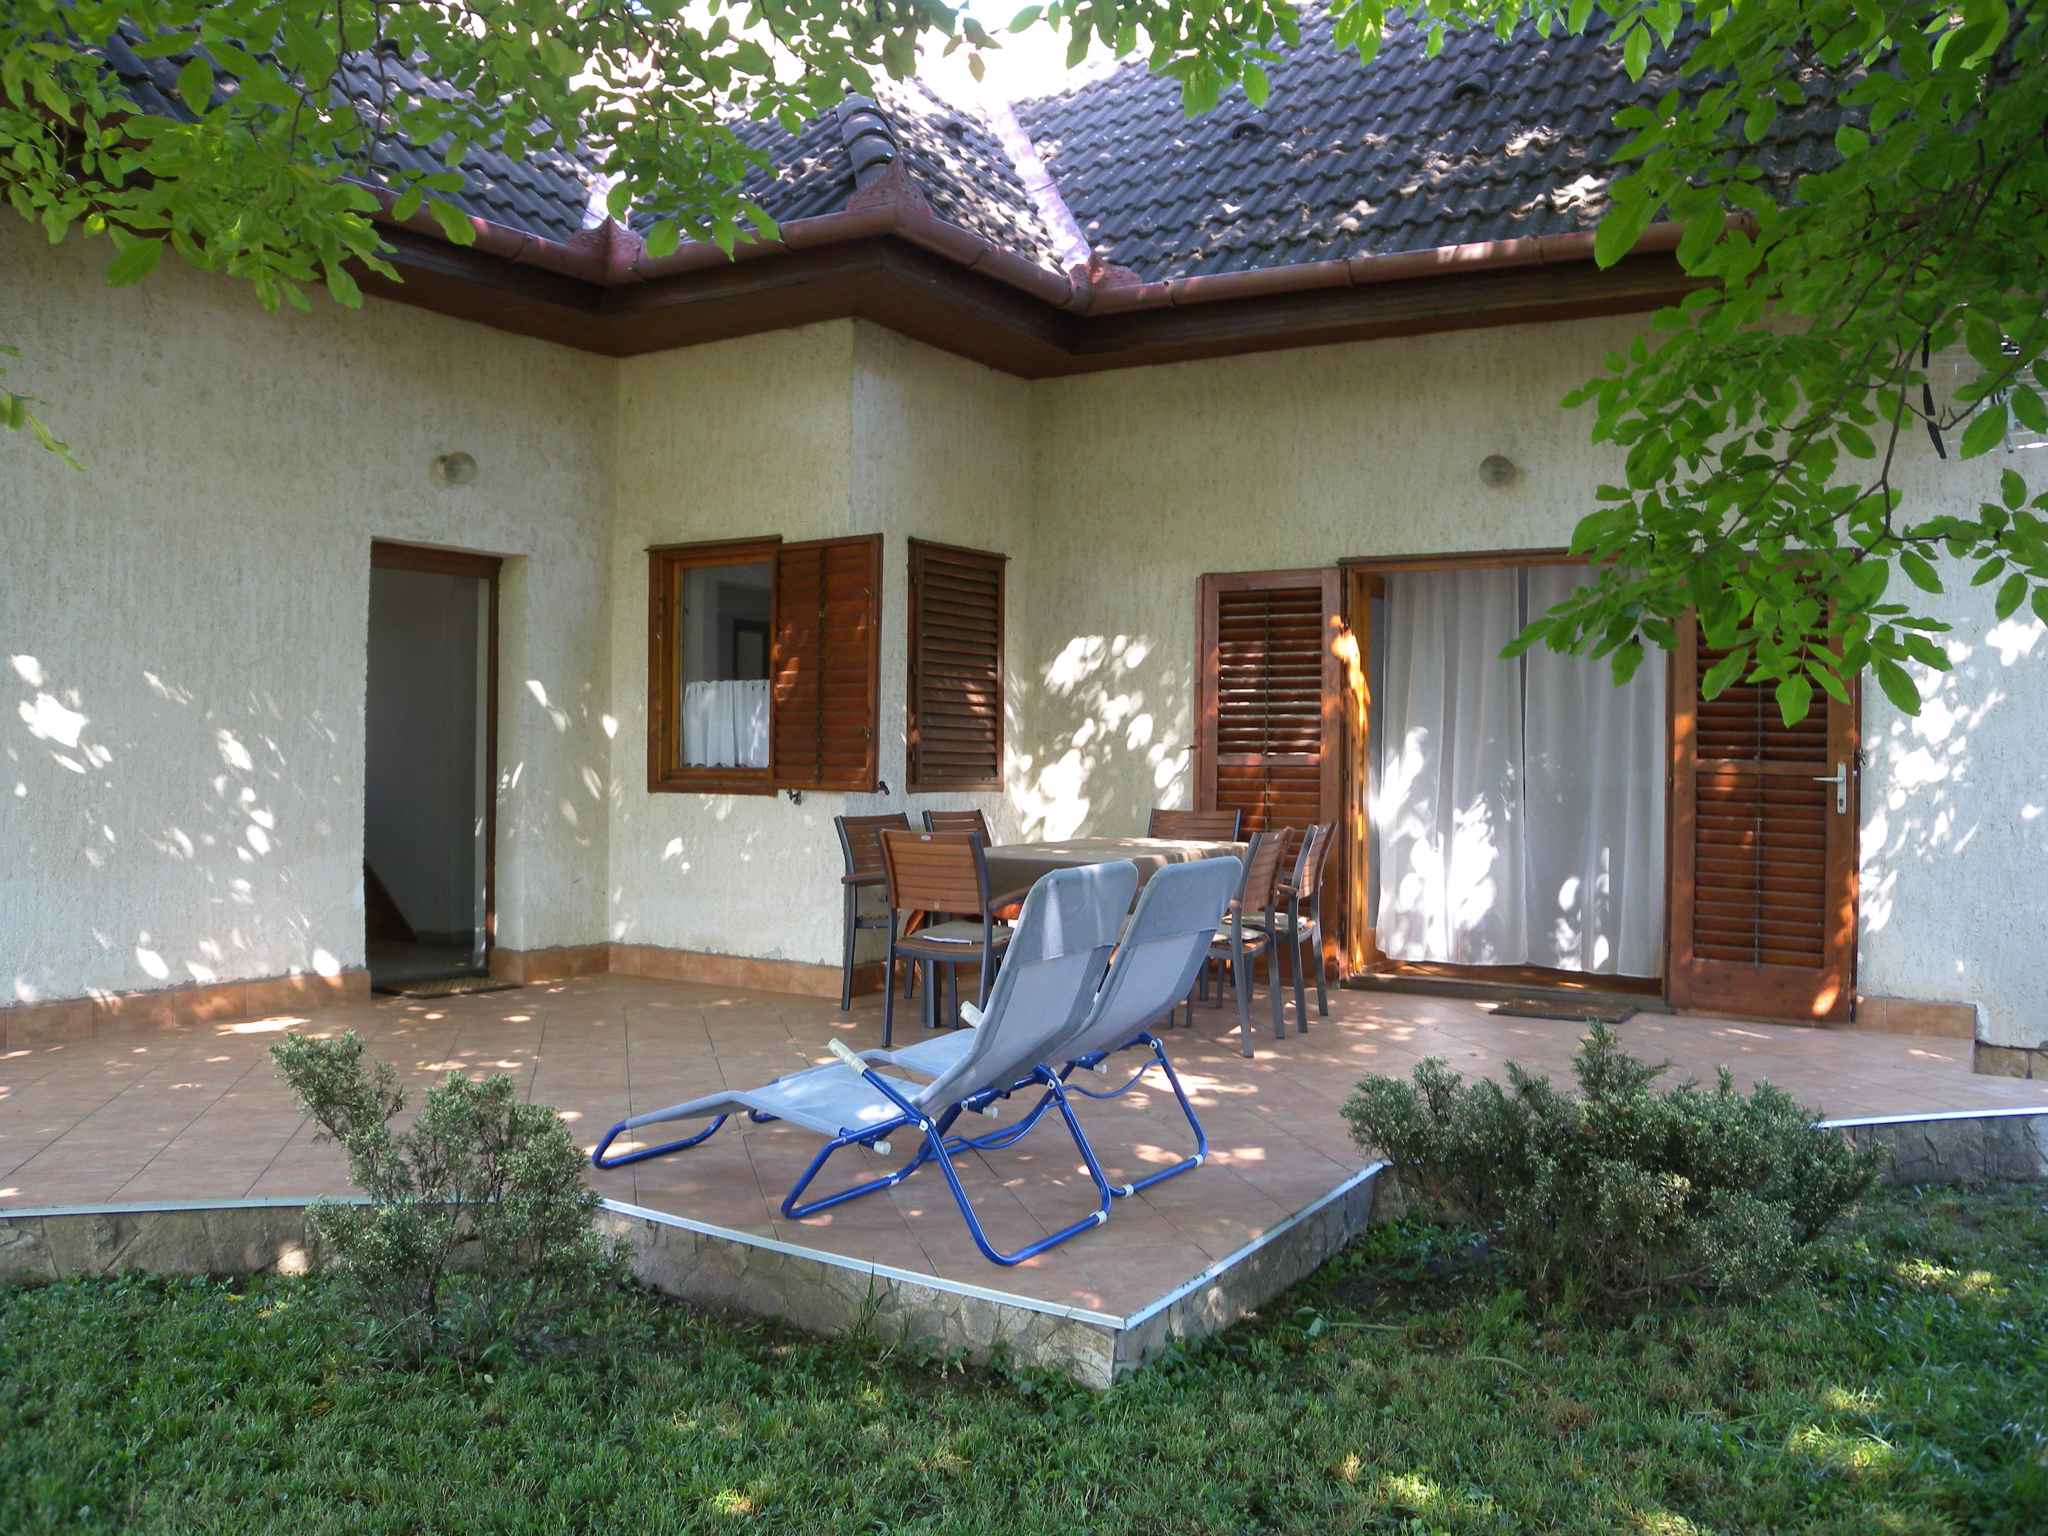 Ferienhaus mit Klimaanlage in der Nähe vom St Ferienhaus in Ungarn